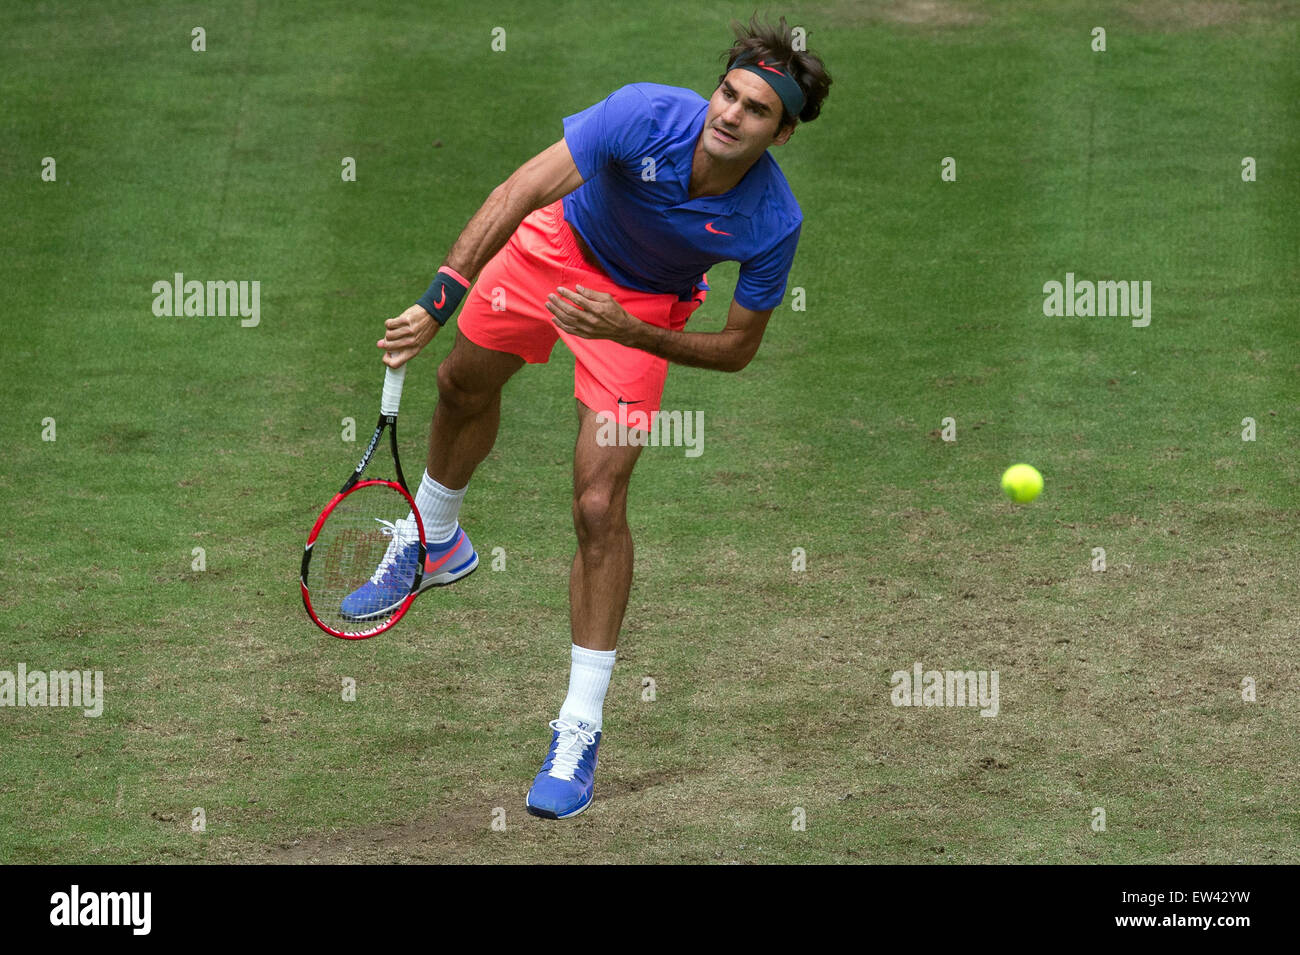 Halle, Allemagne. 17 Juin, 2015. La Suisse de Roger Federer en action pendant la série de 16 match contre Gulbis de Lettonie au tournoi de tennis ATP à Halle, Allemagne, 17 juin 2015. Photo : MAJA HITIJ/dpa/Alamy Live News Banque D'Images